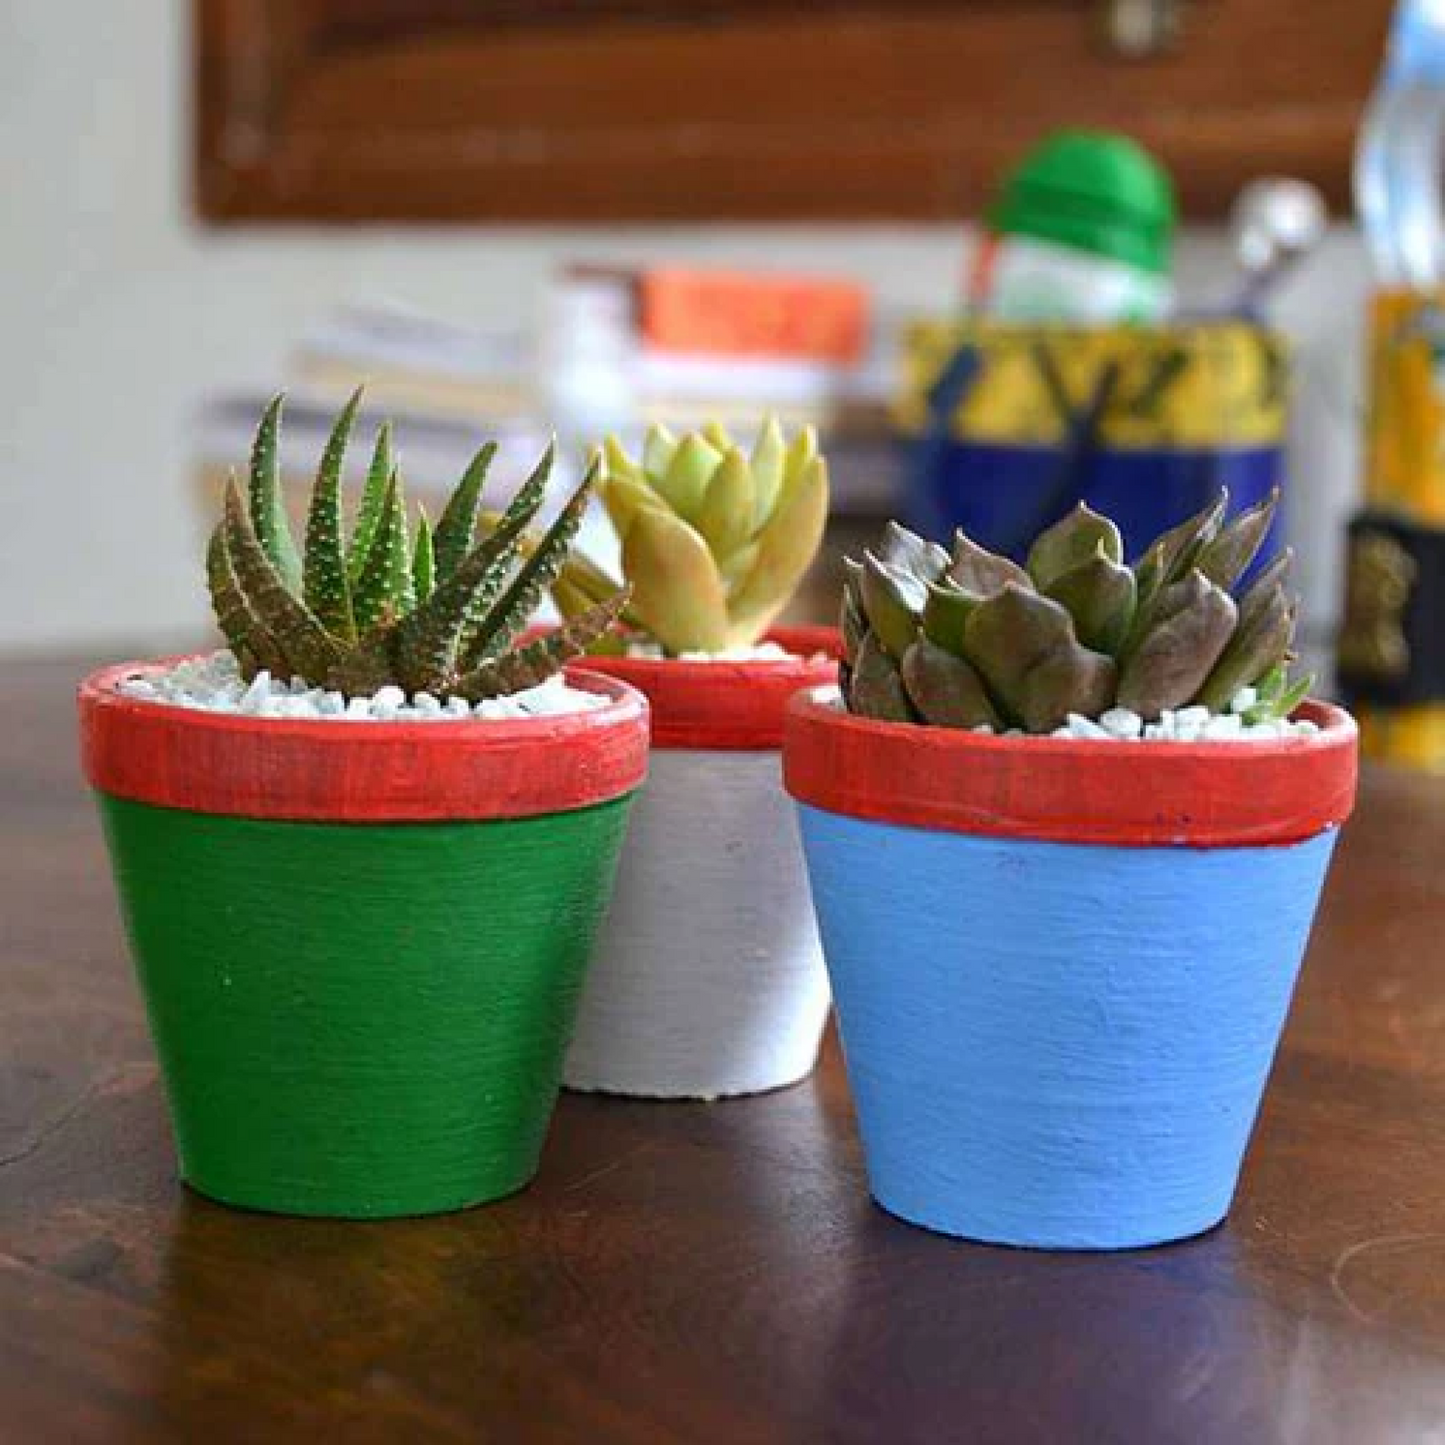 Succulent triplets in colorful pots Plant